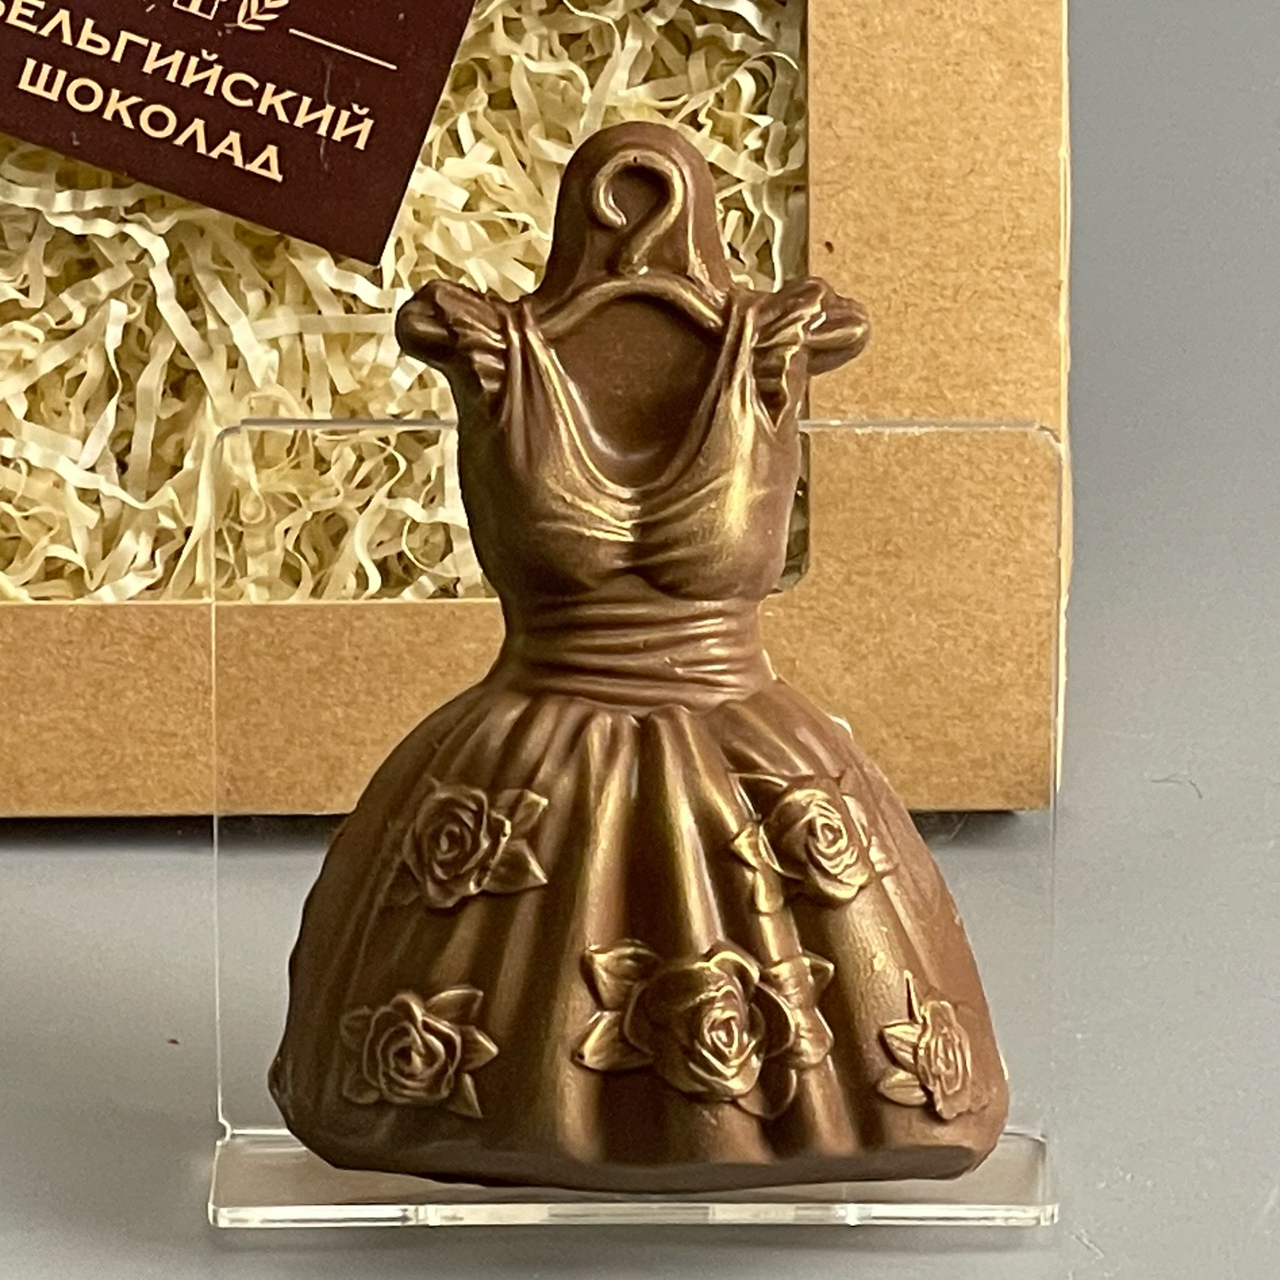 Шоколад ставрополь купить. Фигурка платье статуэтка с украшениями. Реноме век шоколад 1906.